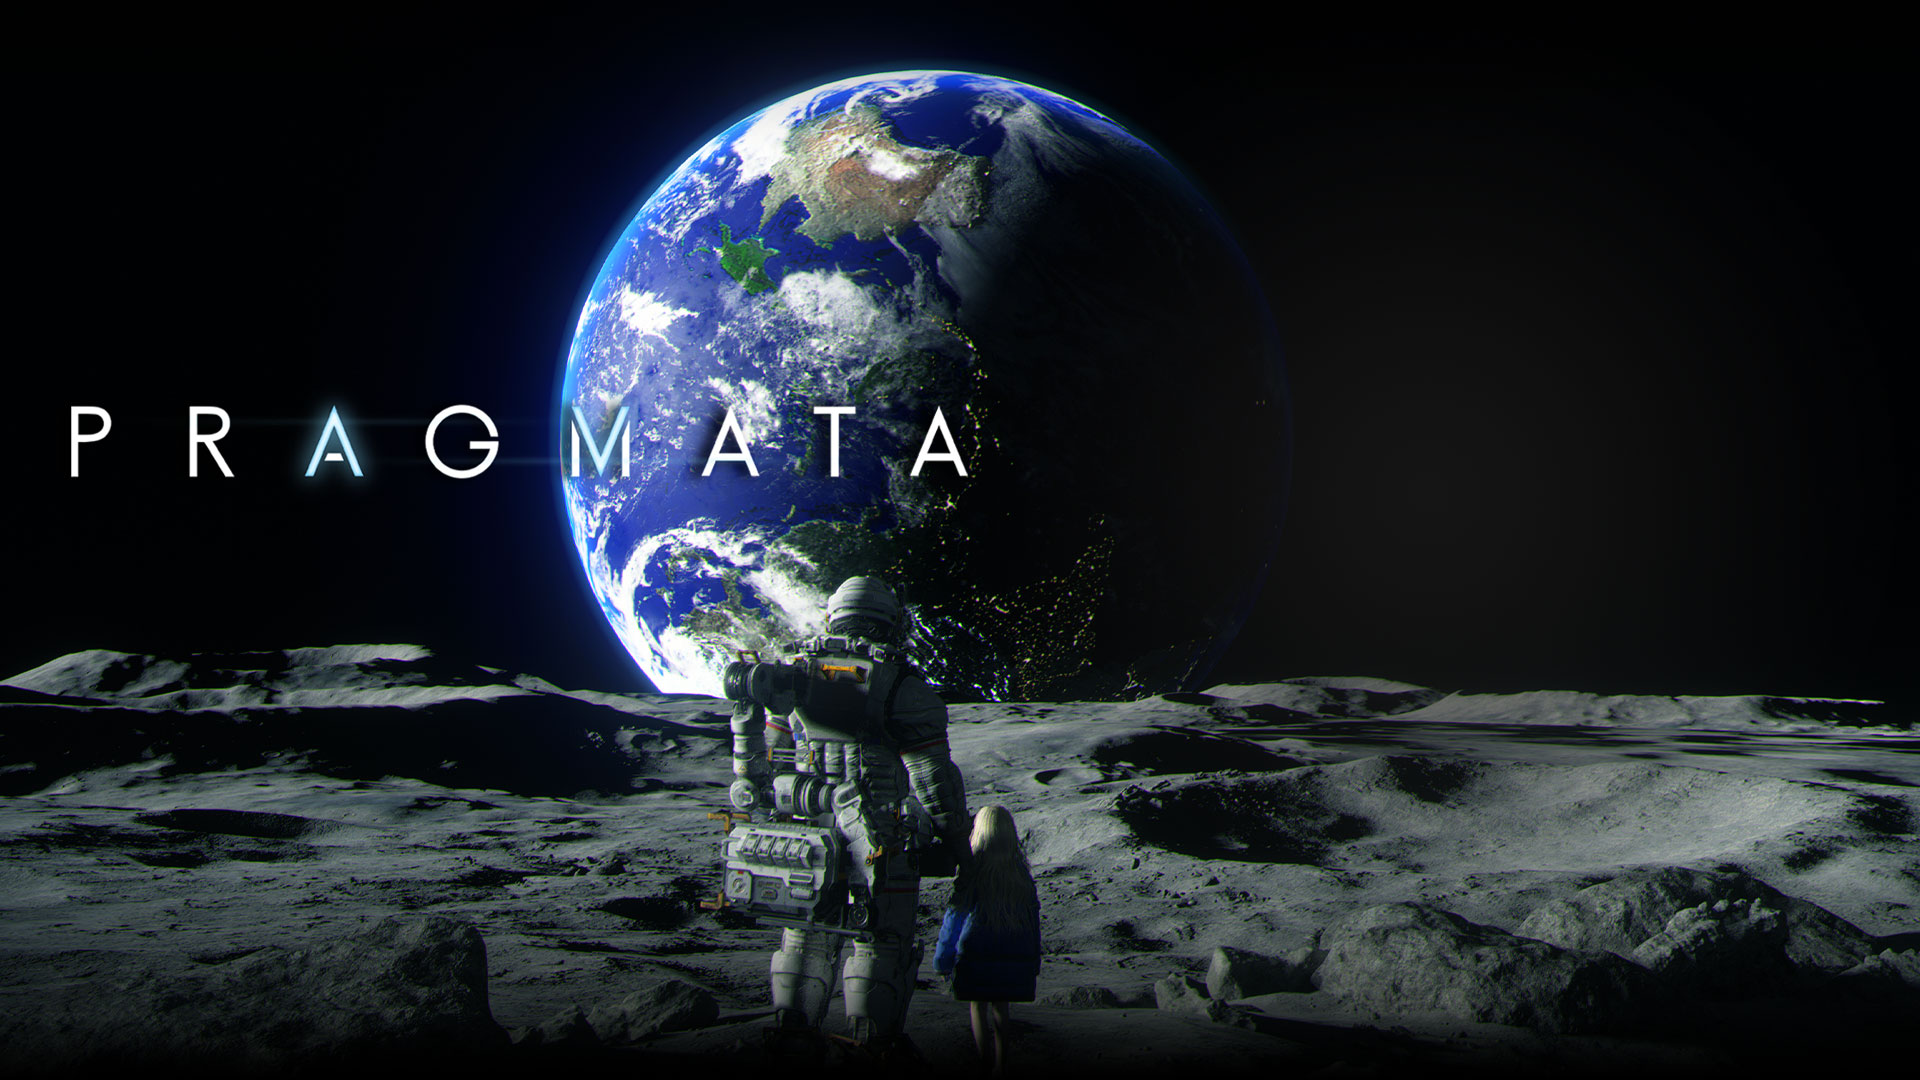 Pragmata, en astronaut og en ung jente som ser på jorden mens de står sammen på månen